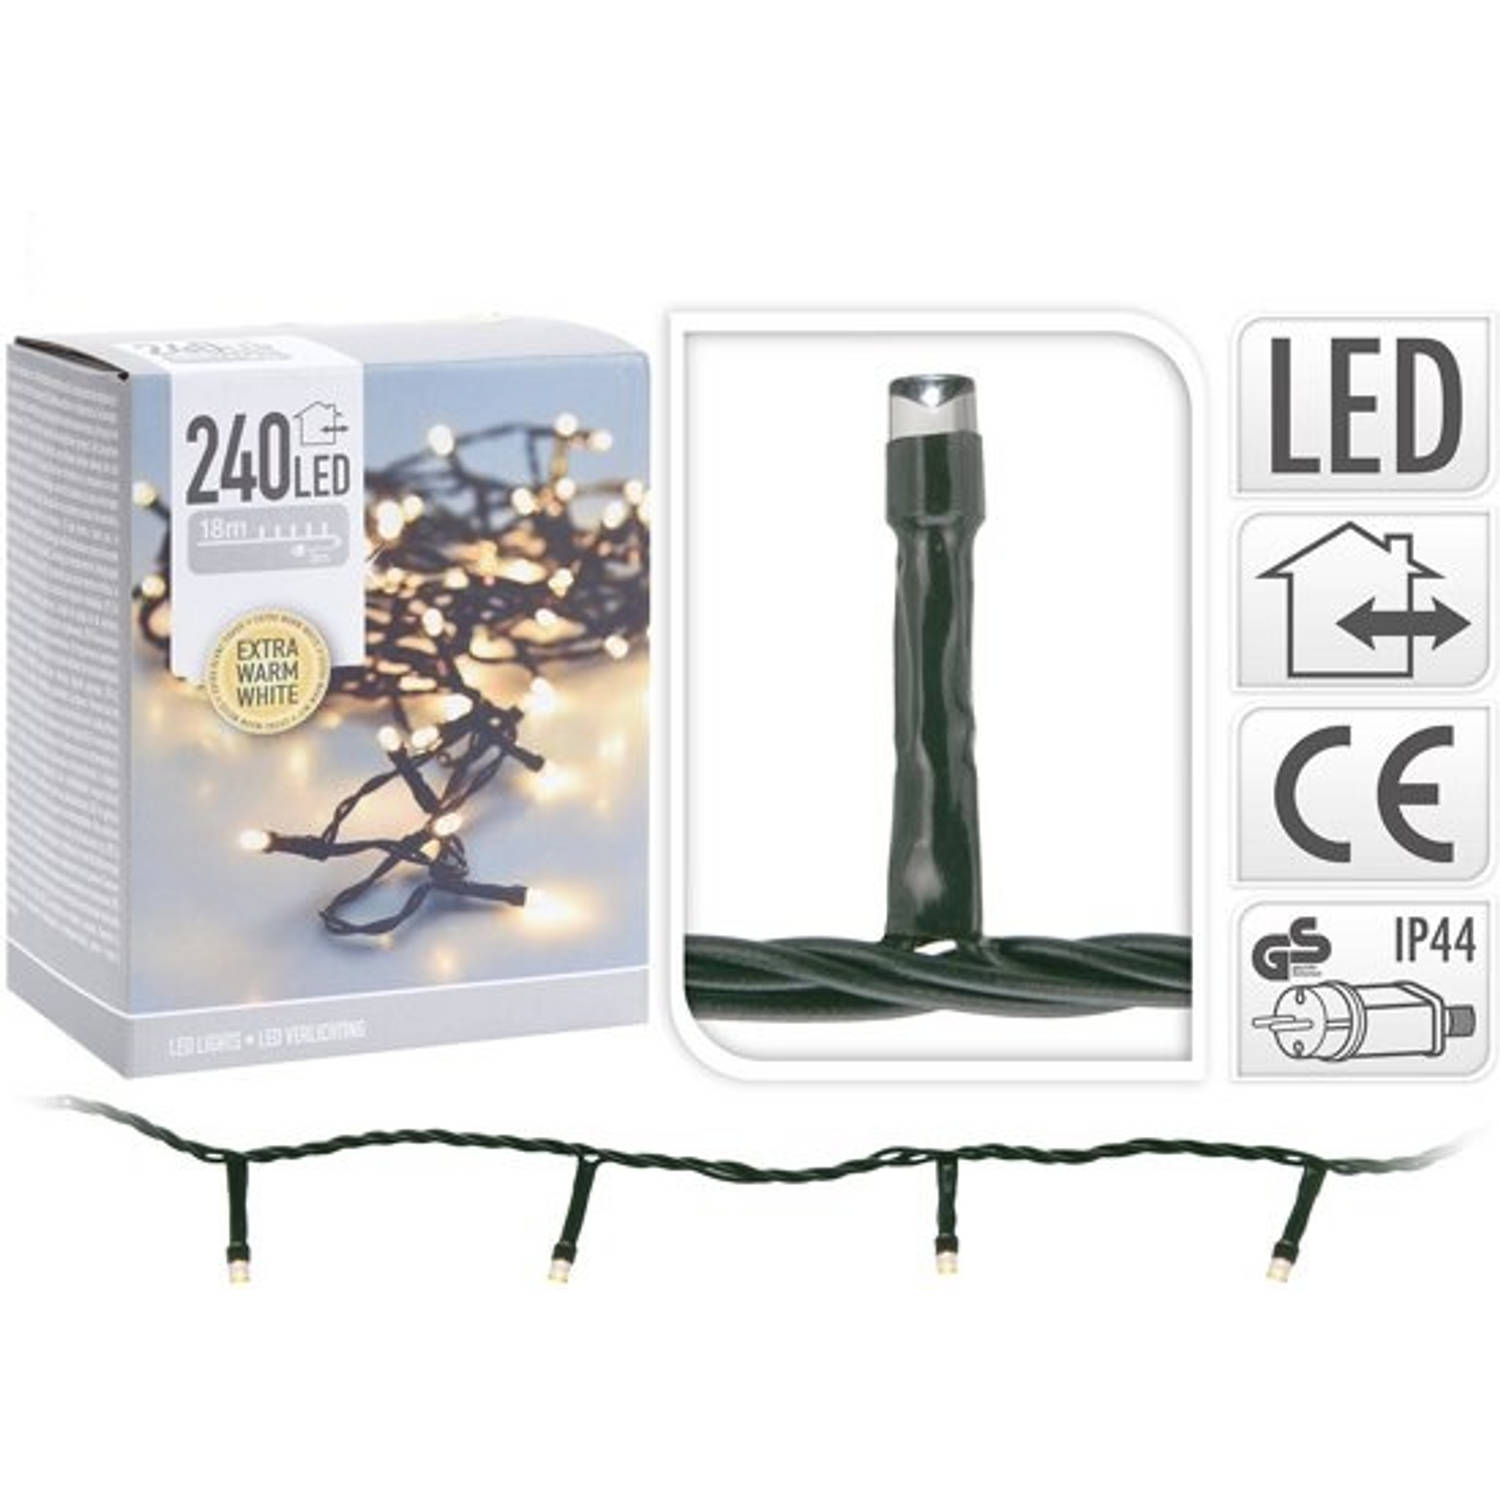 KerstXL LED verlichting - 18 meter - 240 LED lampjes - extra warm wit - voor binnen & buiten